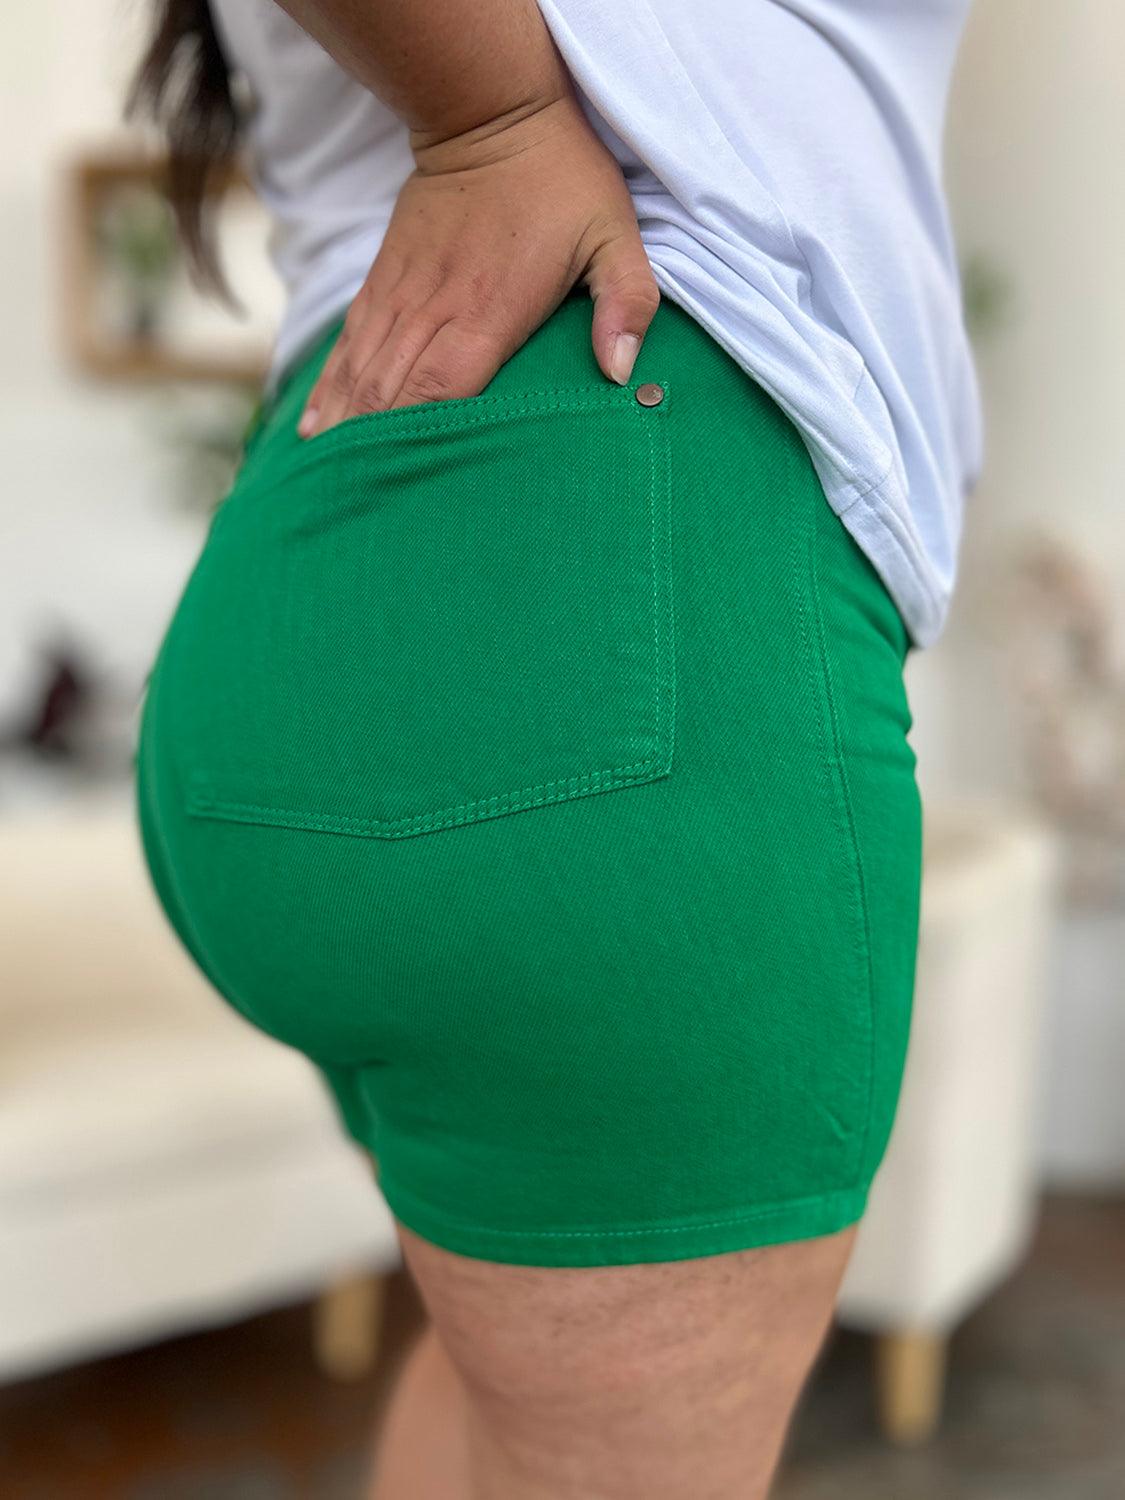 Judy Blue Tummy Control Garment Dyed Denim Shorts - SwagglyLife Home & Fashion